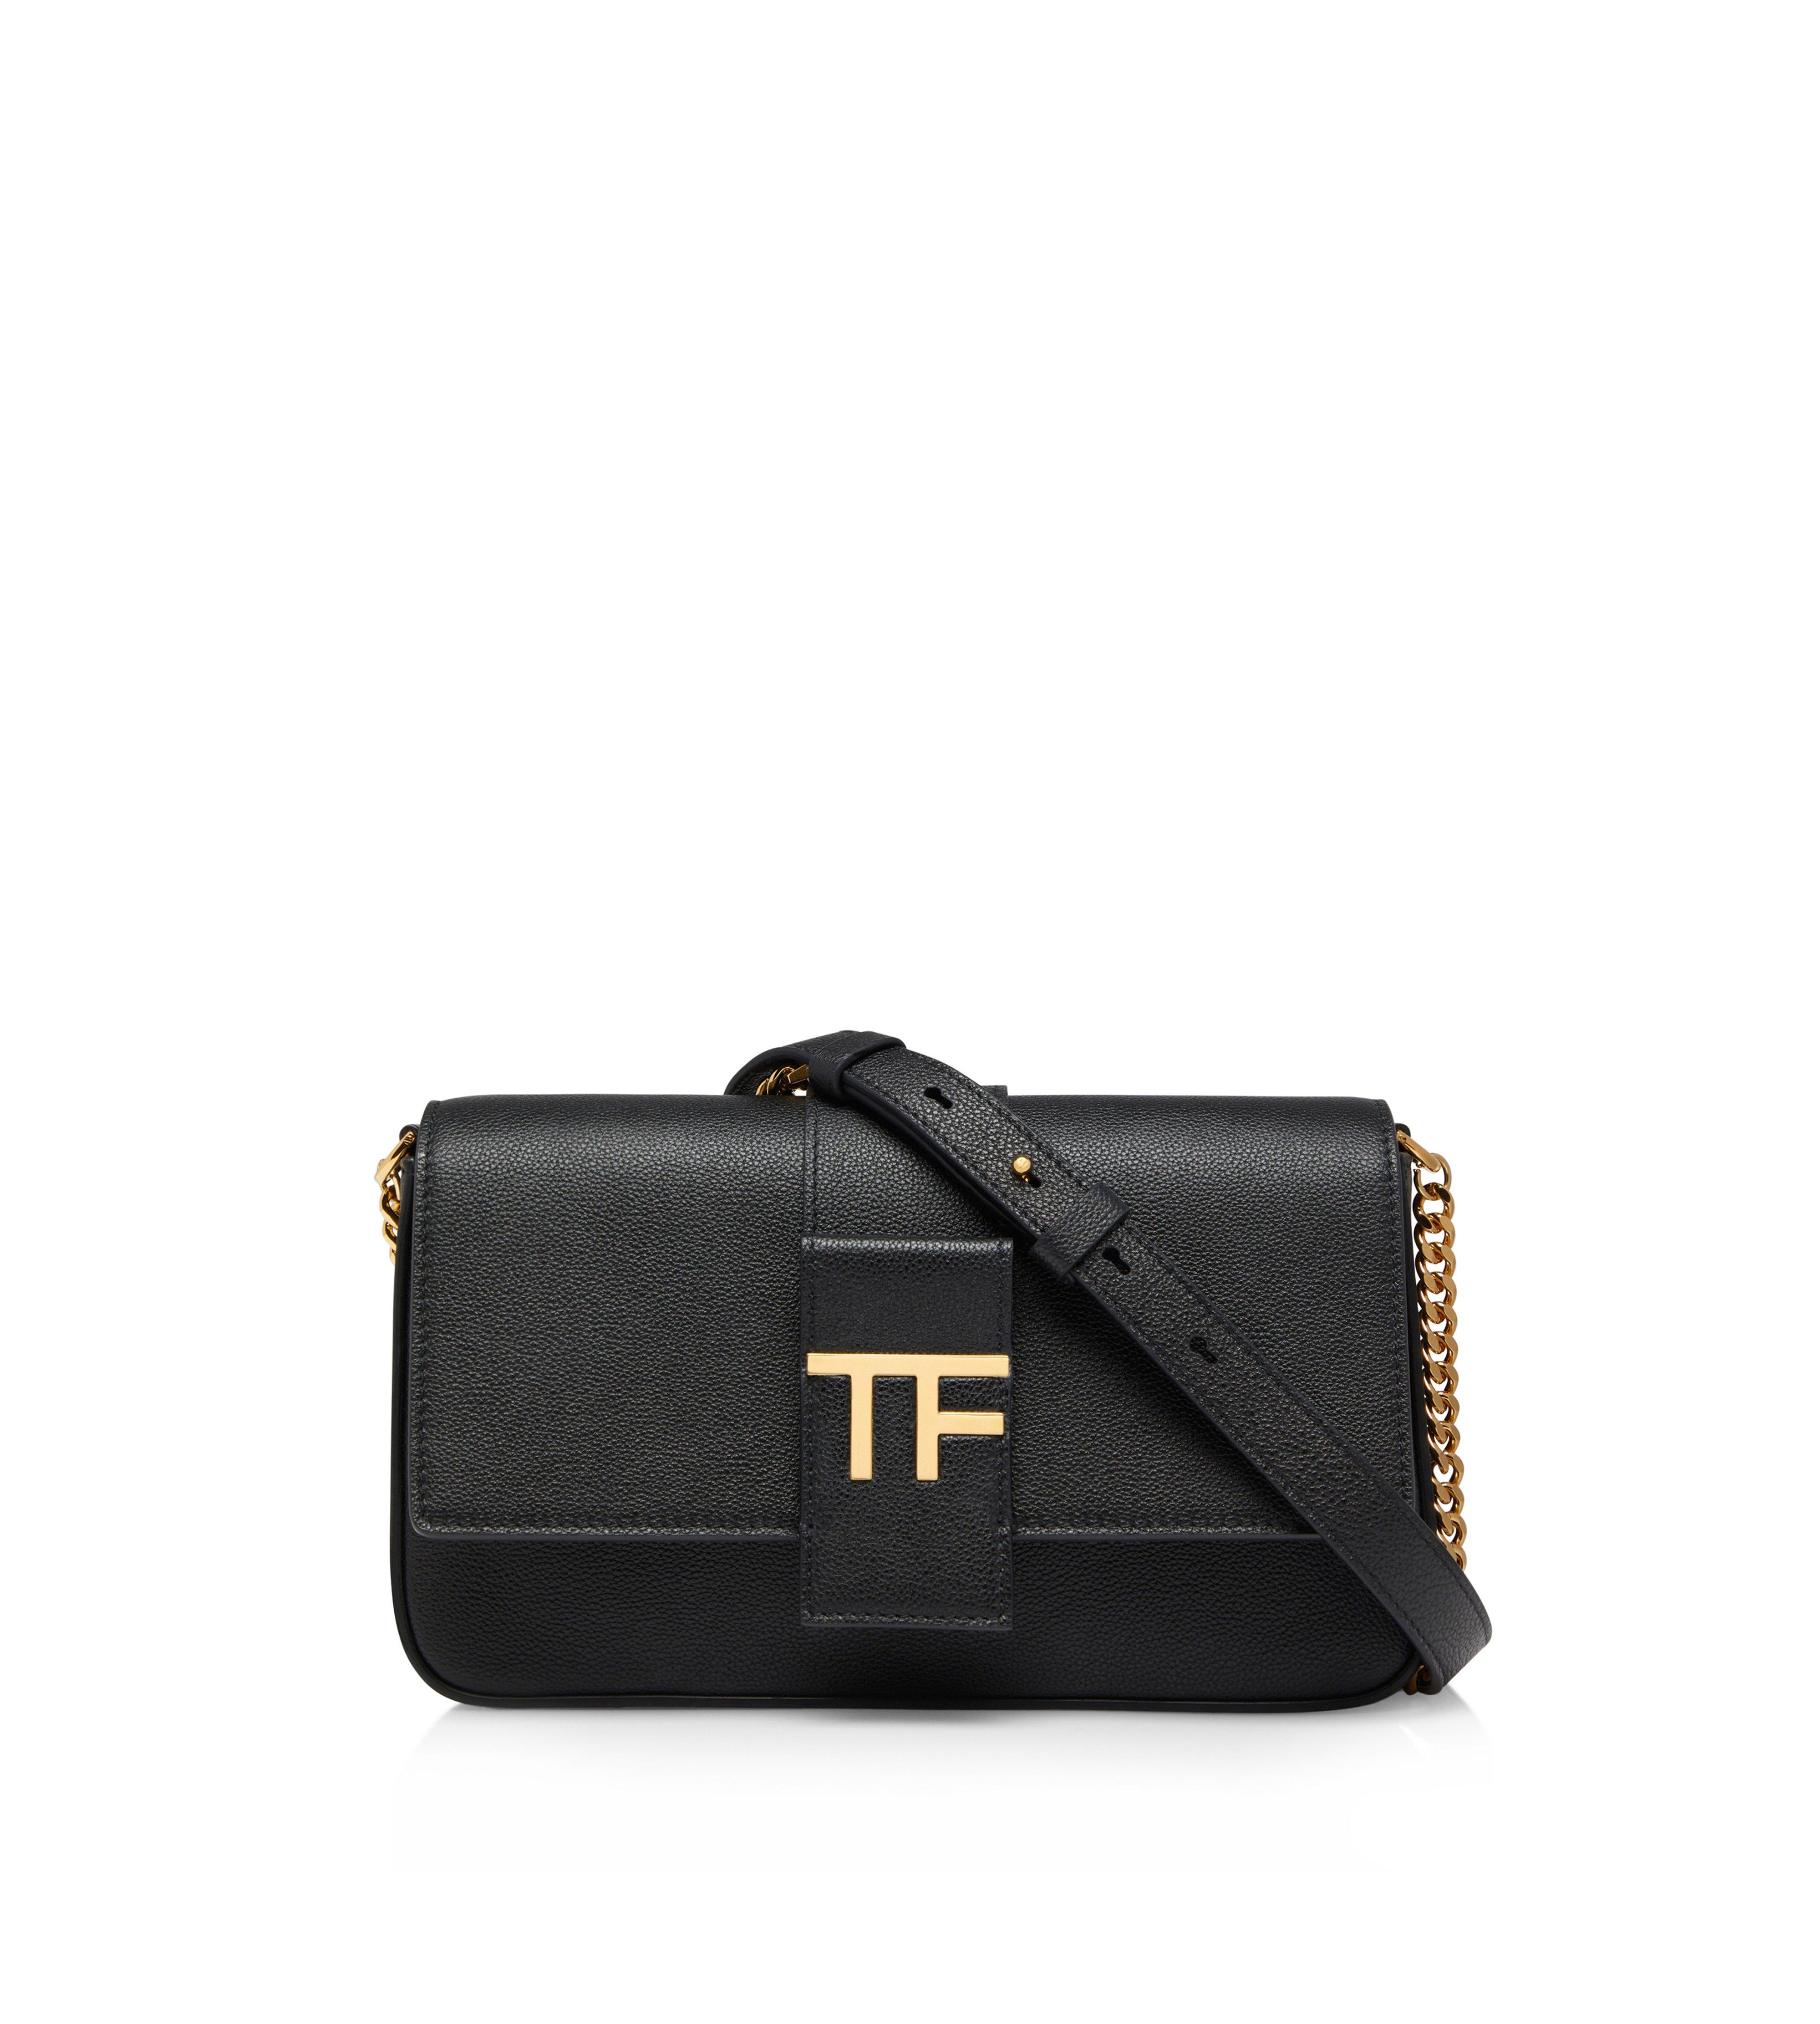 Handbags - TOM FORD | Women's Handbags 